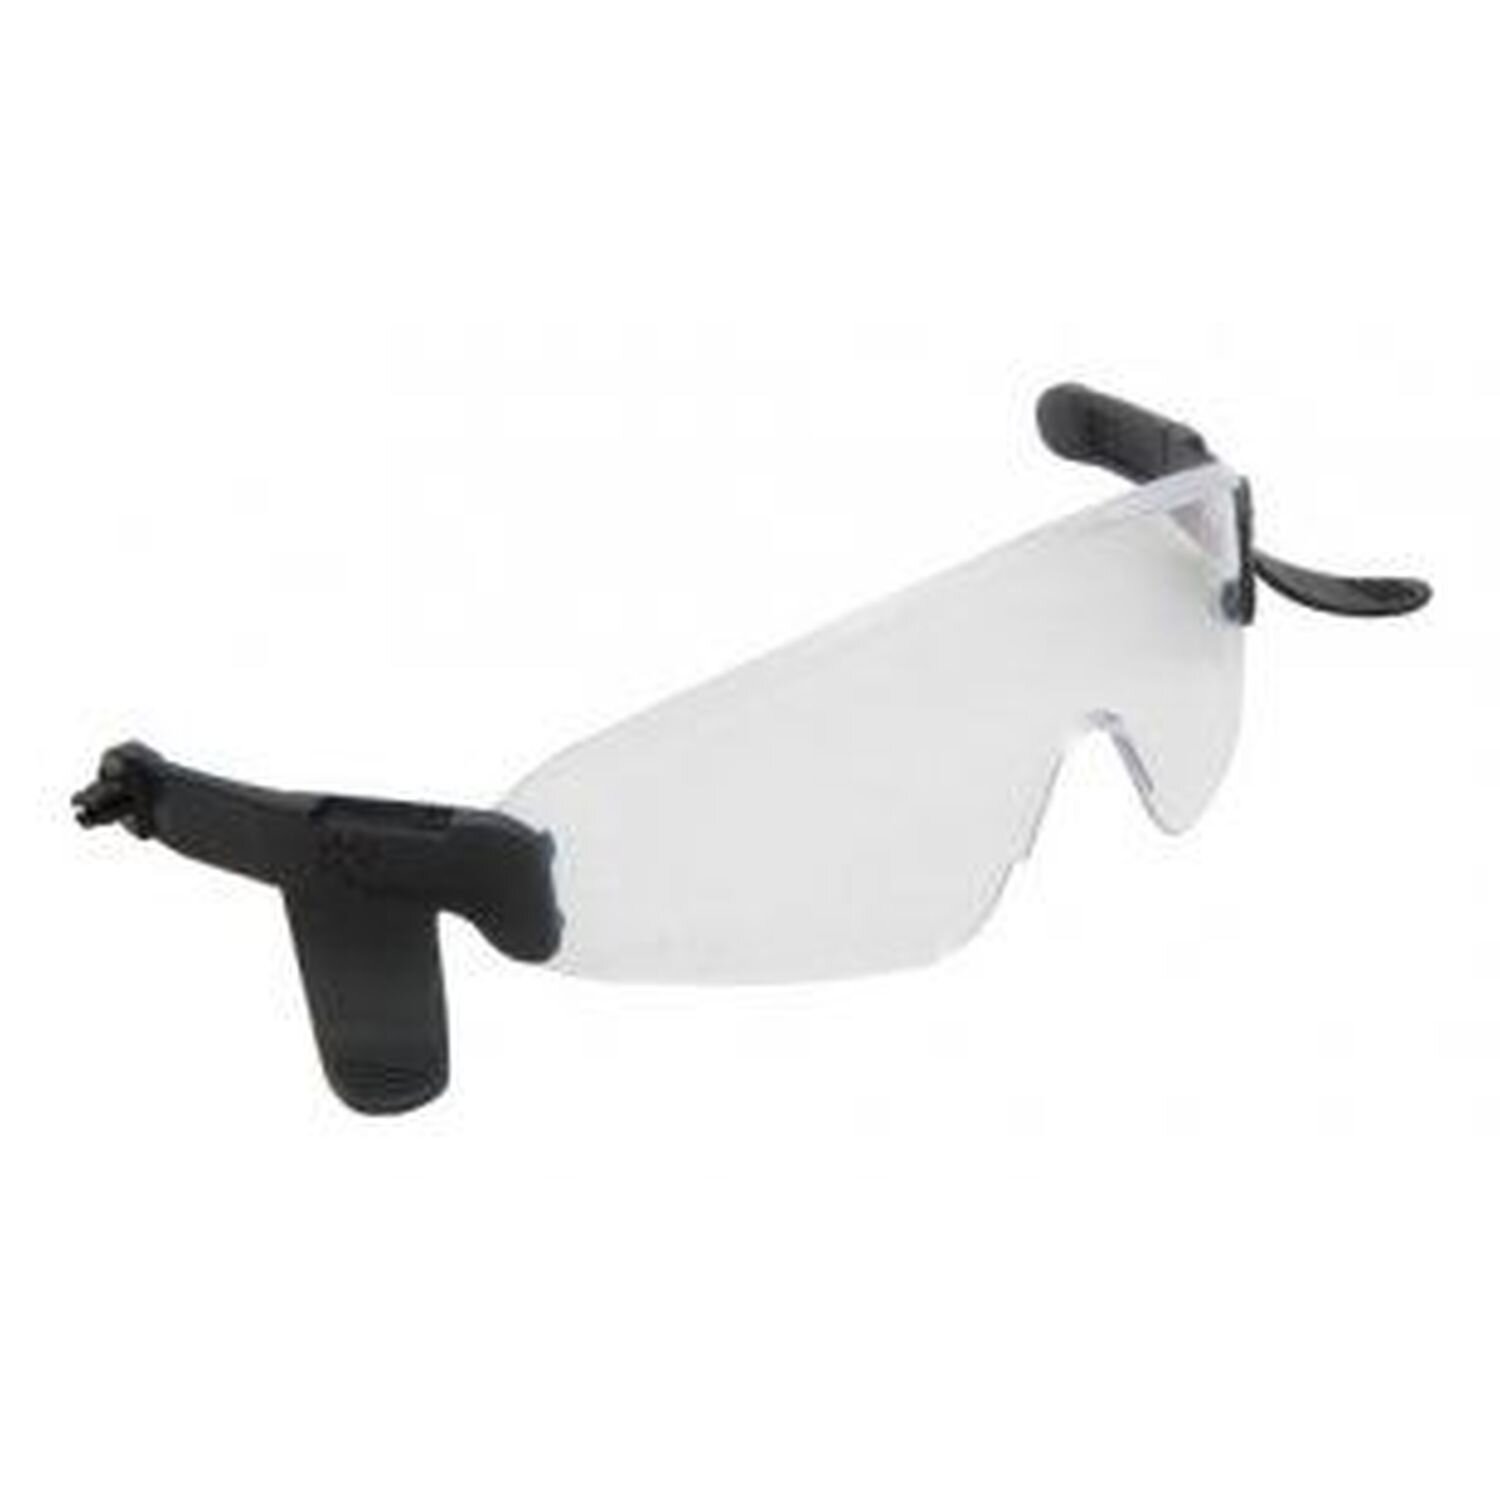 Clear Eyeshield for H79 Nexus Heightmaster Helmet